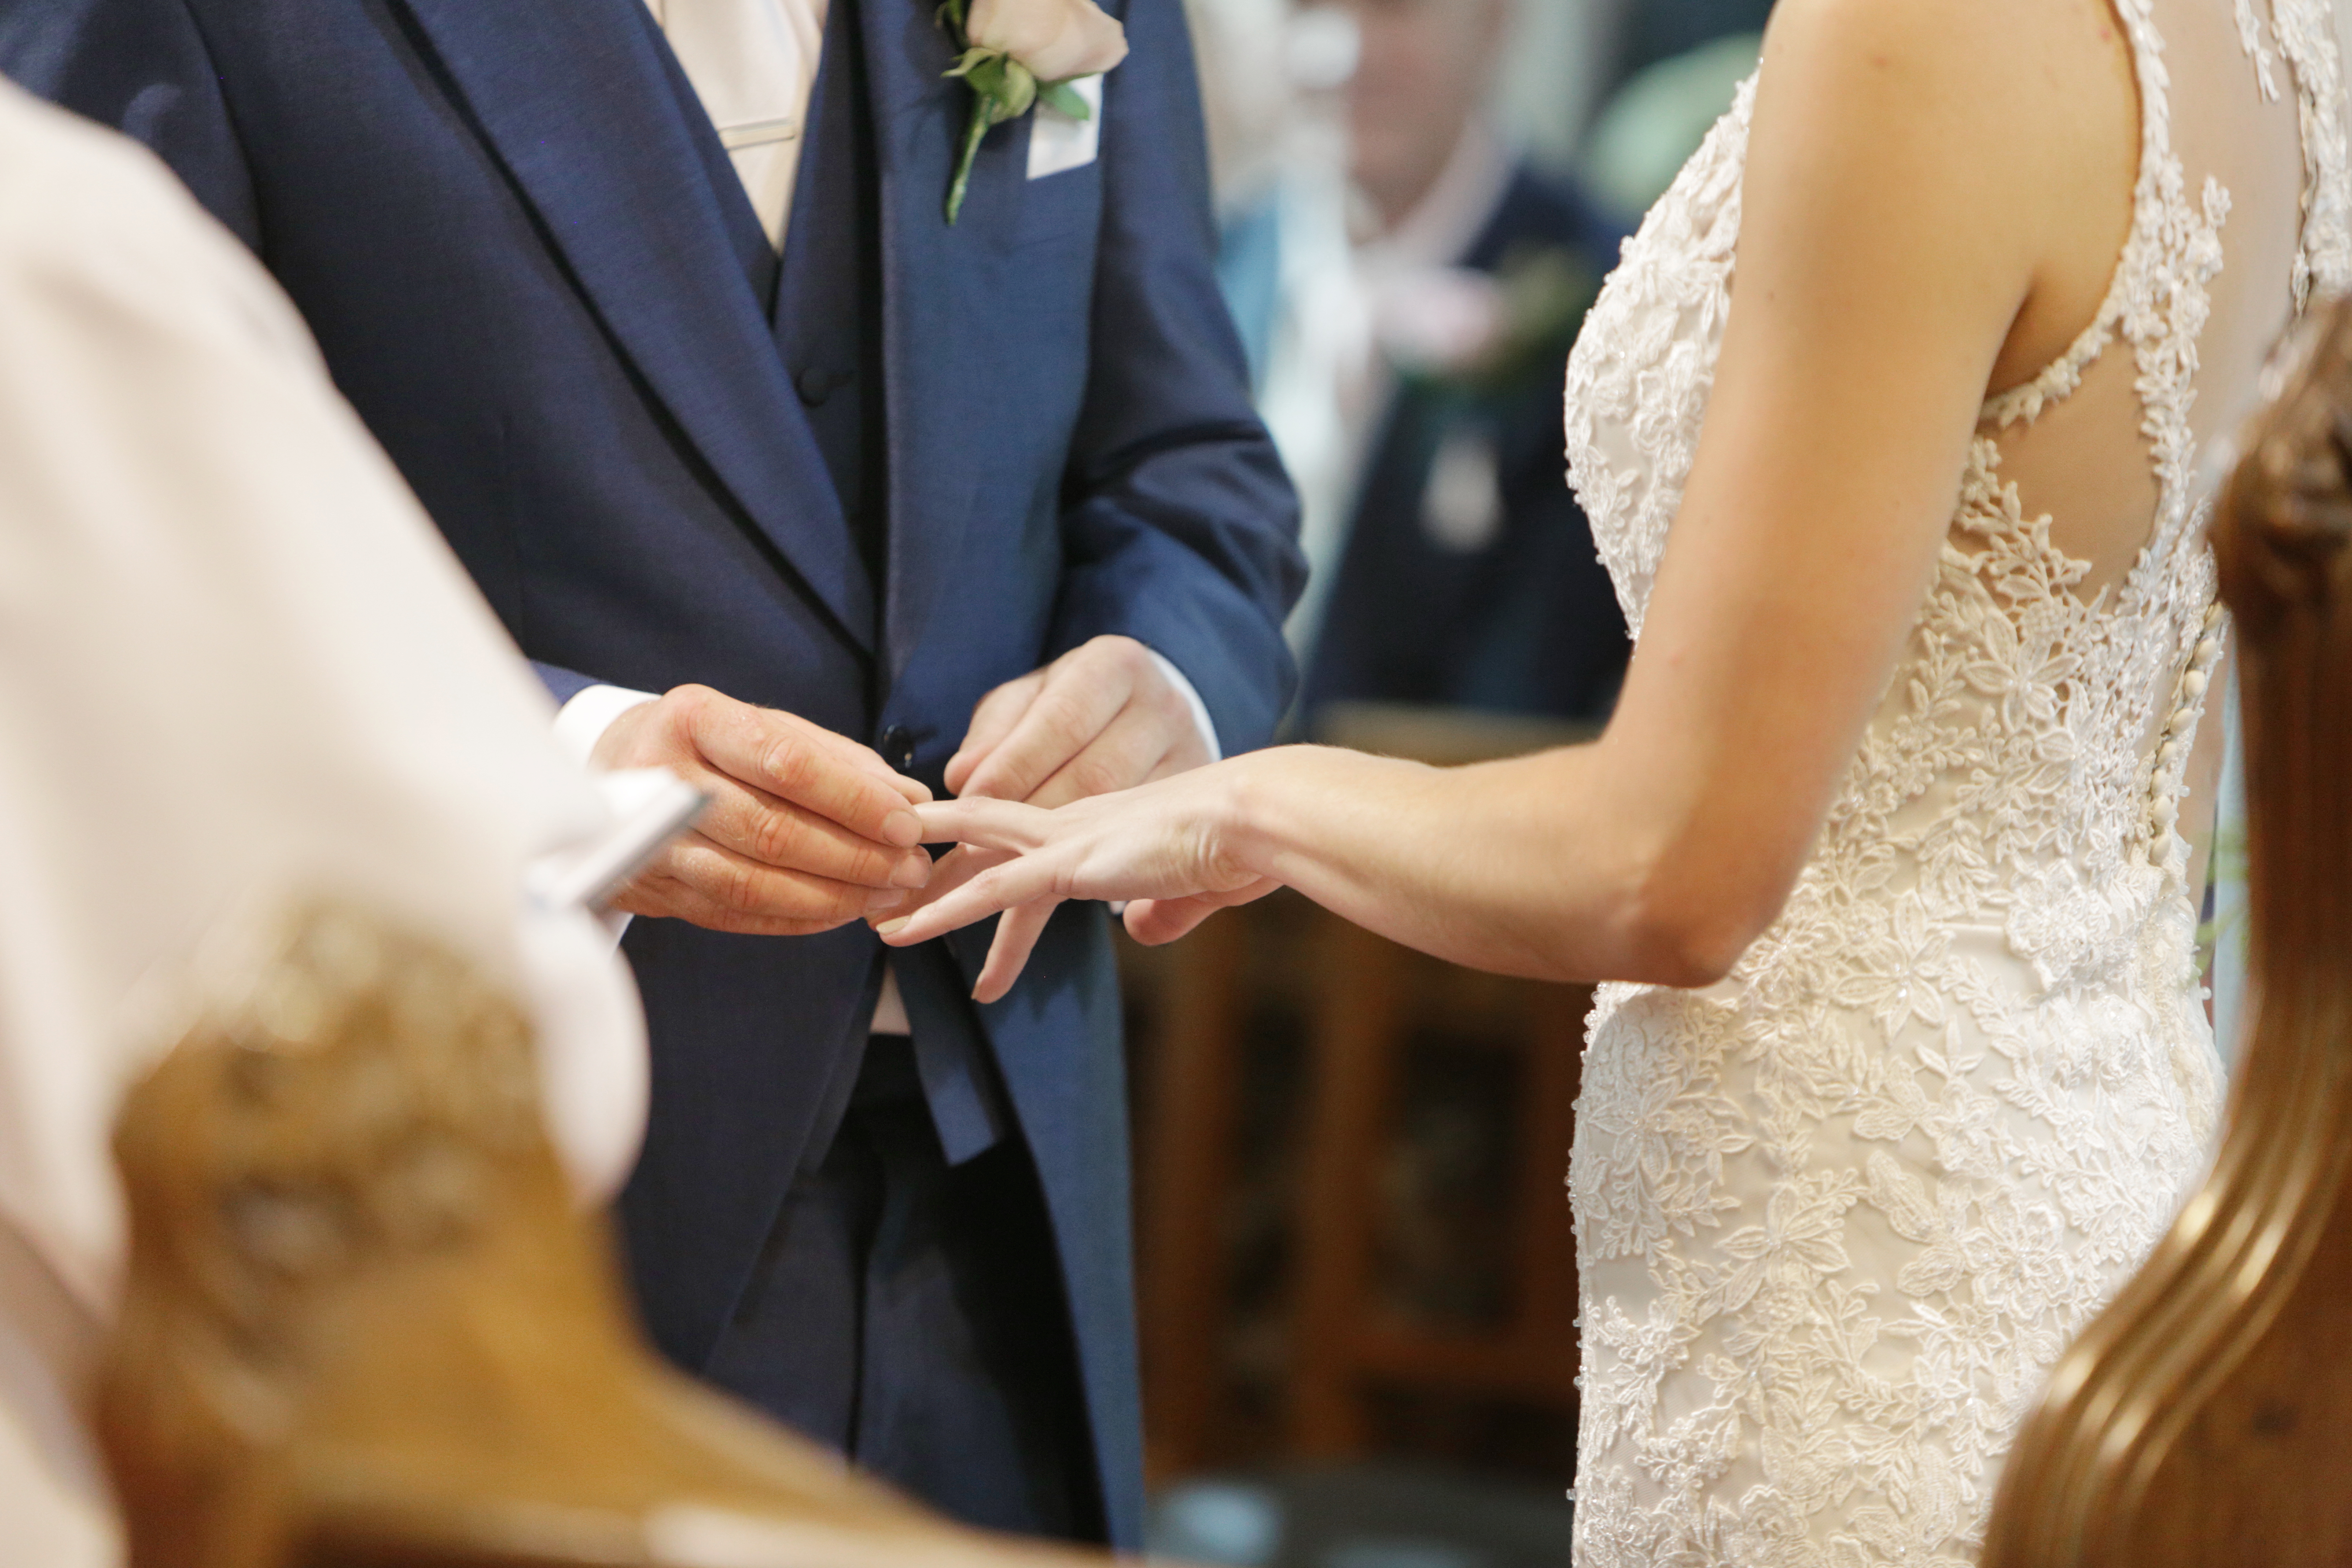 Ein Paar heiratet in der Kirche | Quelle: Getty Images